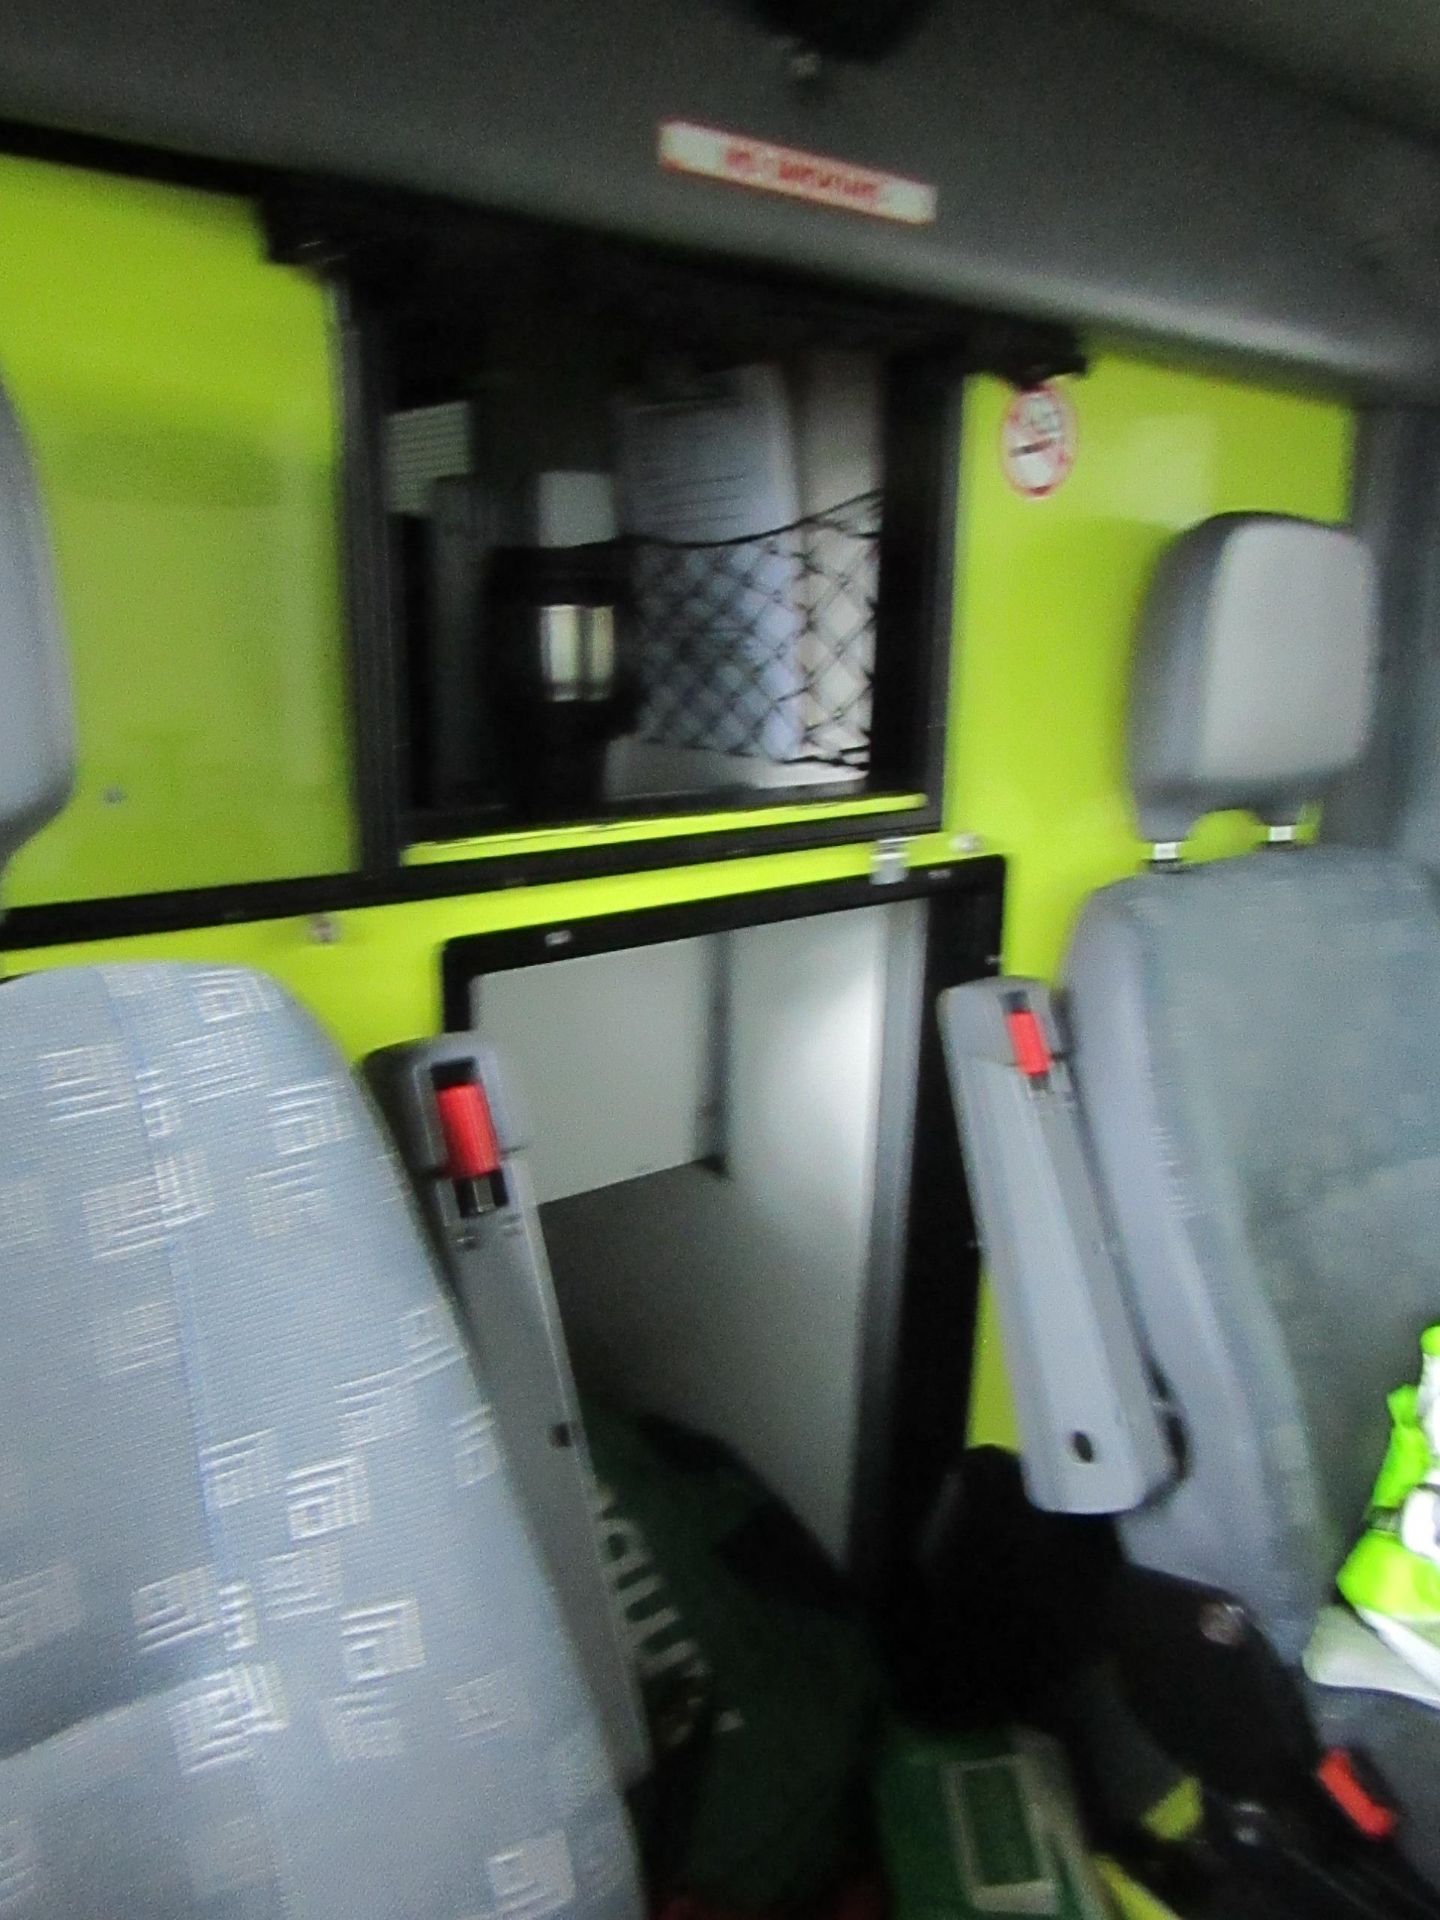 Mercedes Sprinter 416CDI  Ambulance, FX56 HMH, First reg 01 12 2006, Revenue weight 4600 KG Gross, - Image 11 of 14